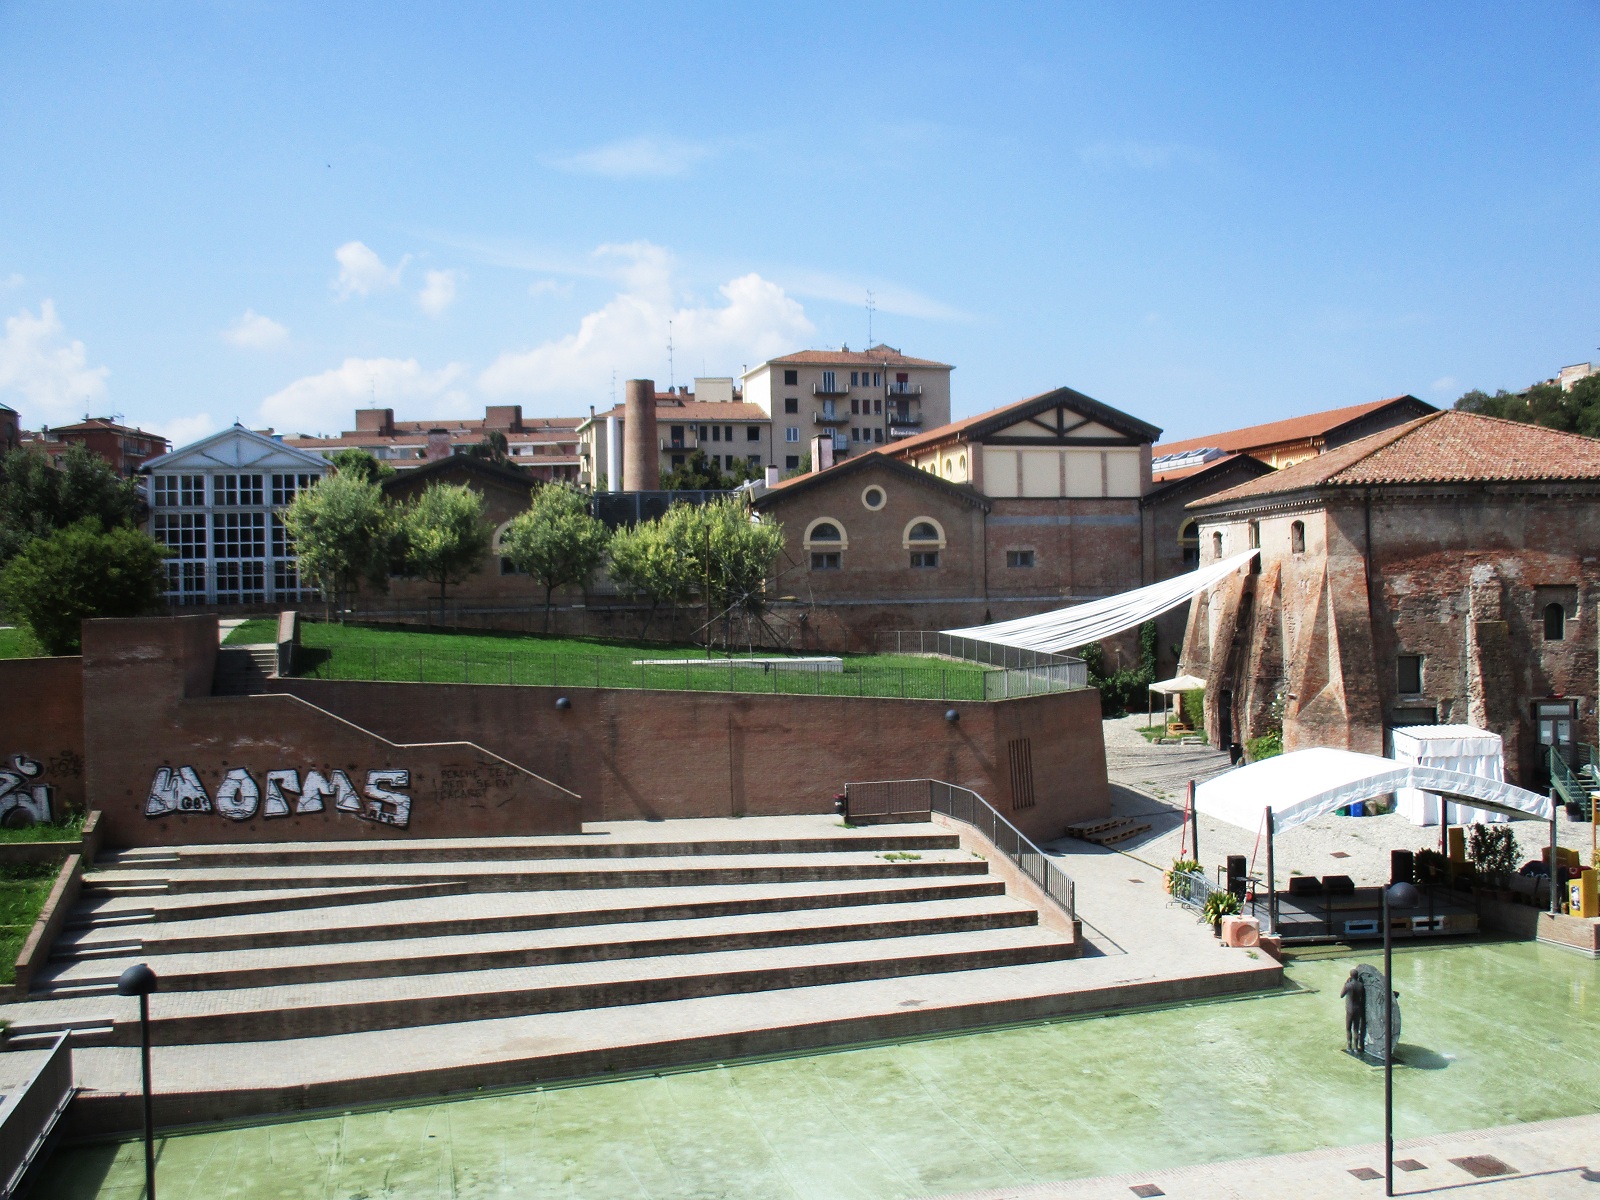 The Best of Bologna - De oude haven